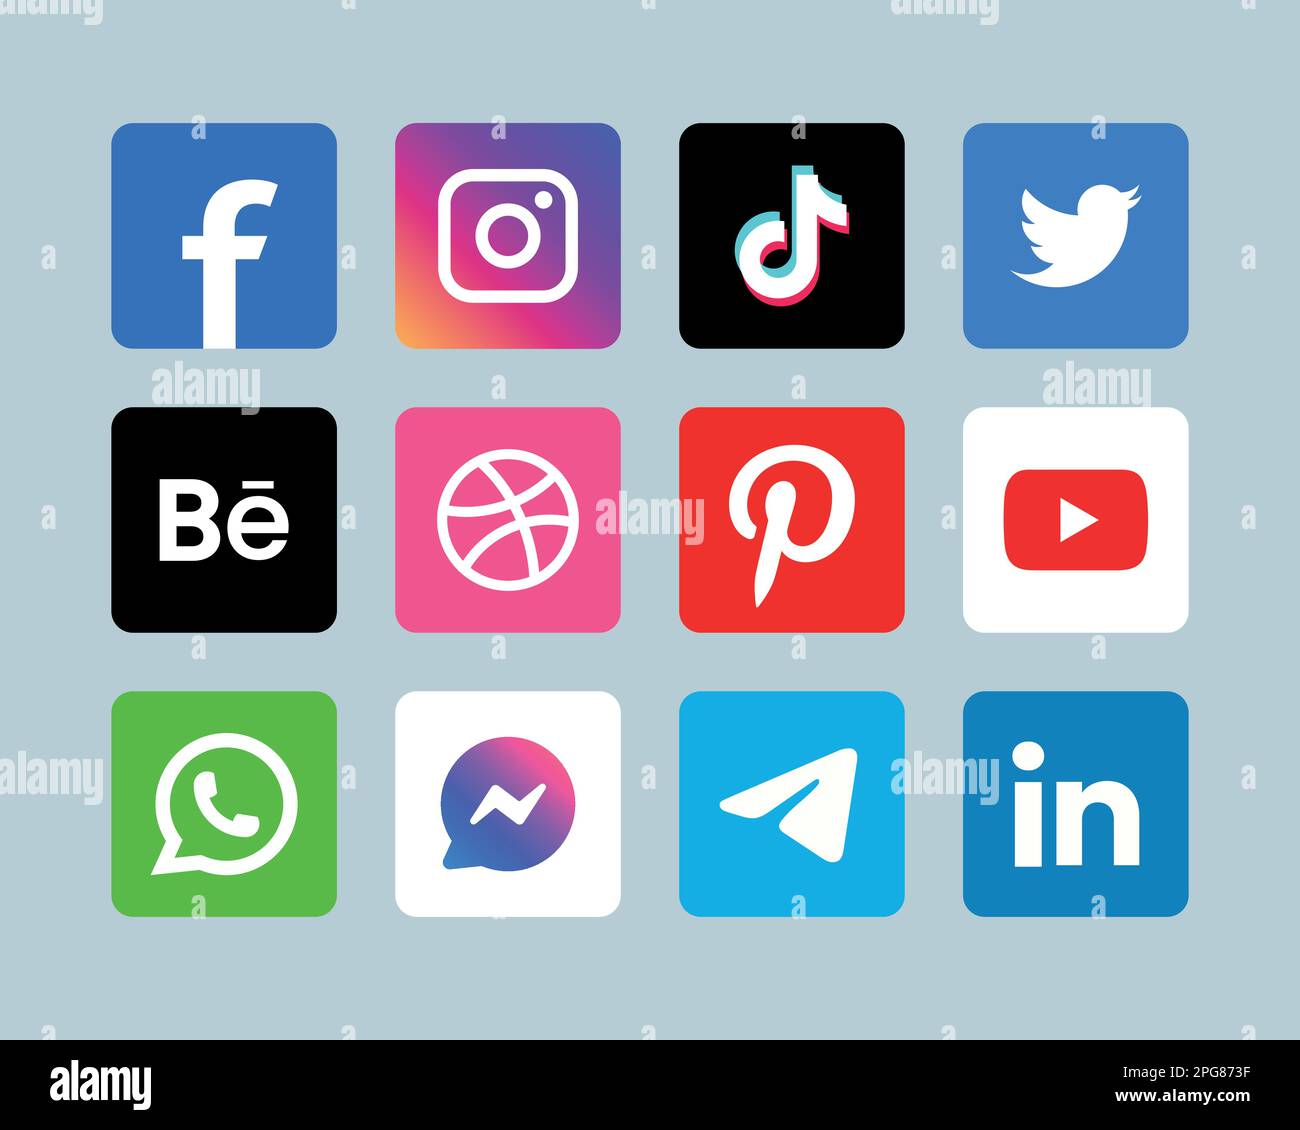 Popular Social Media Logo Icons Stock Vector